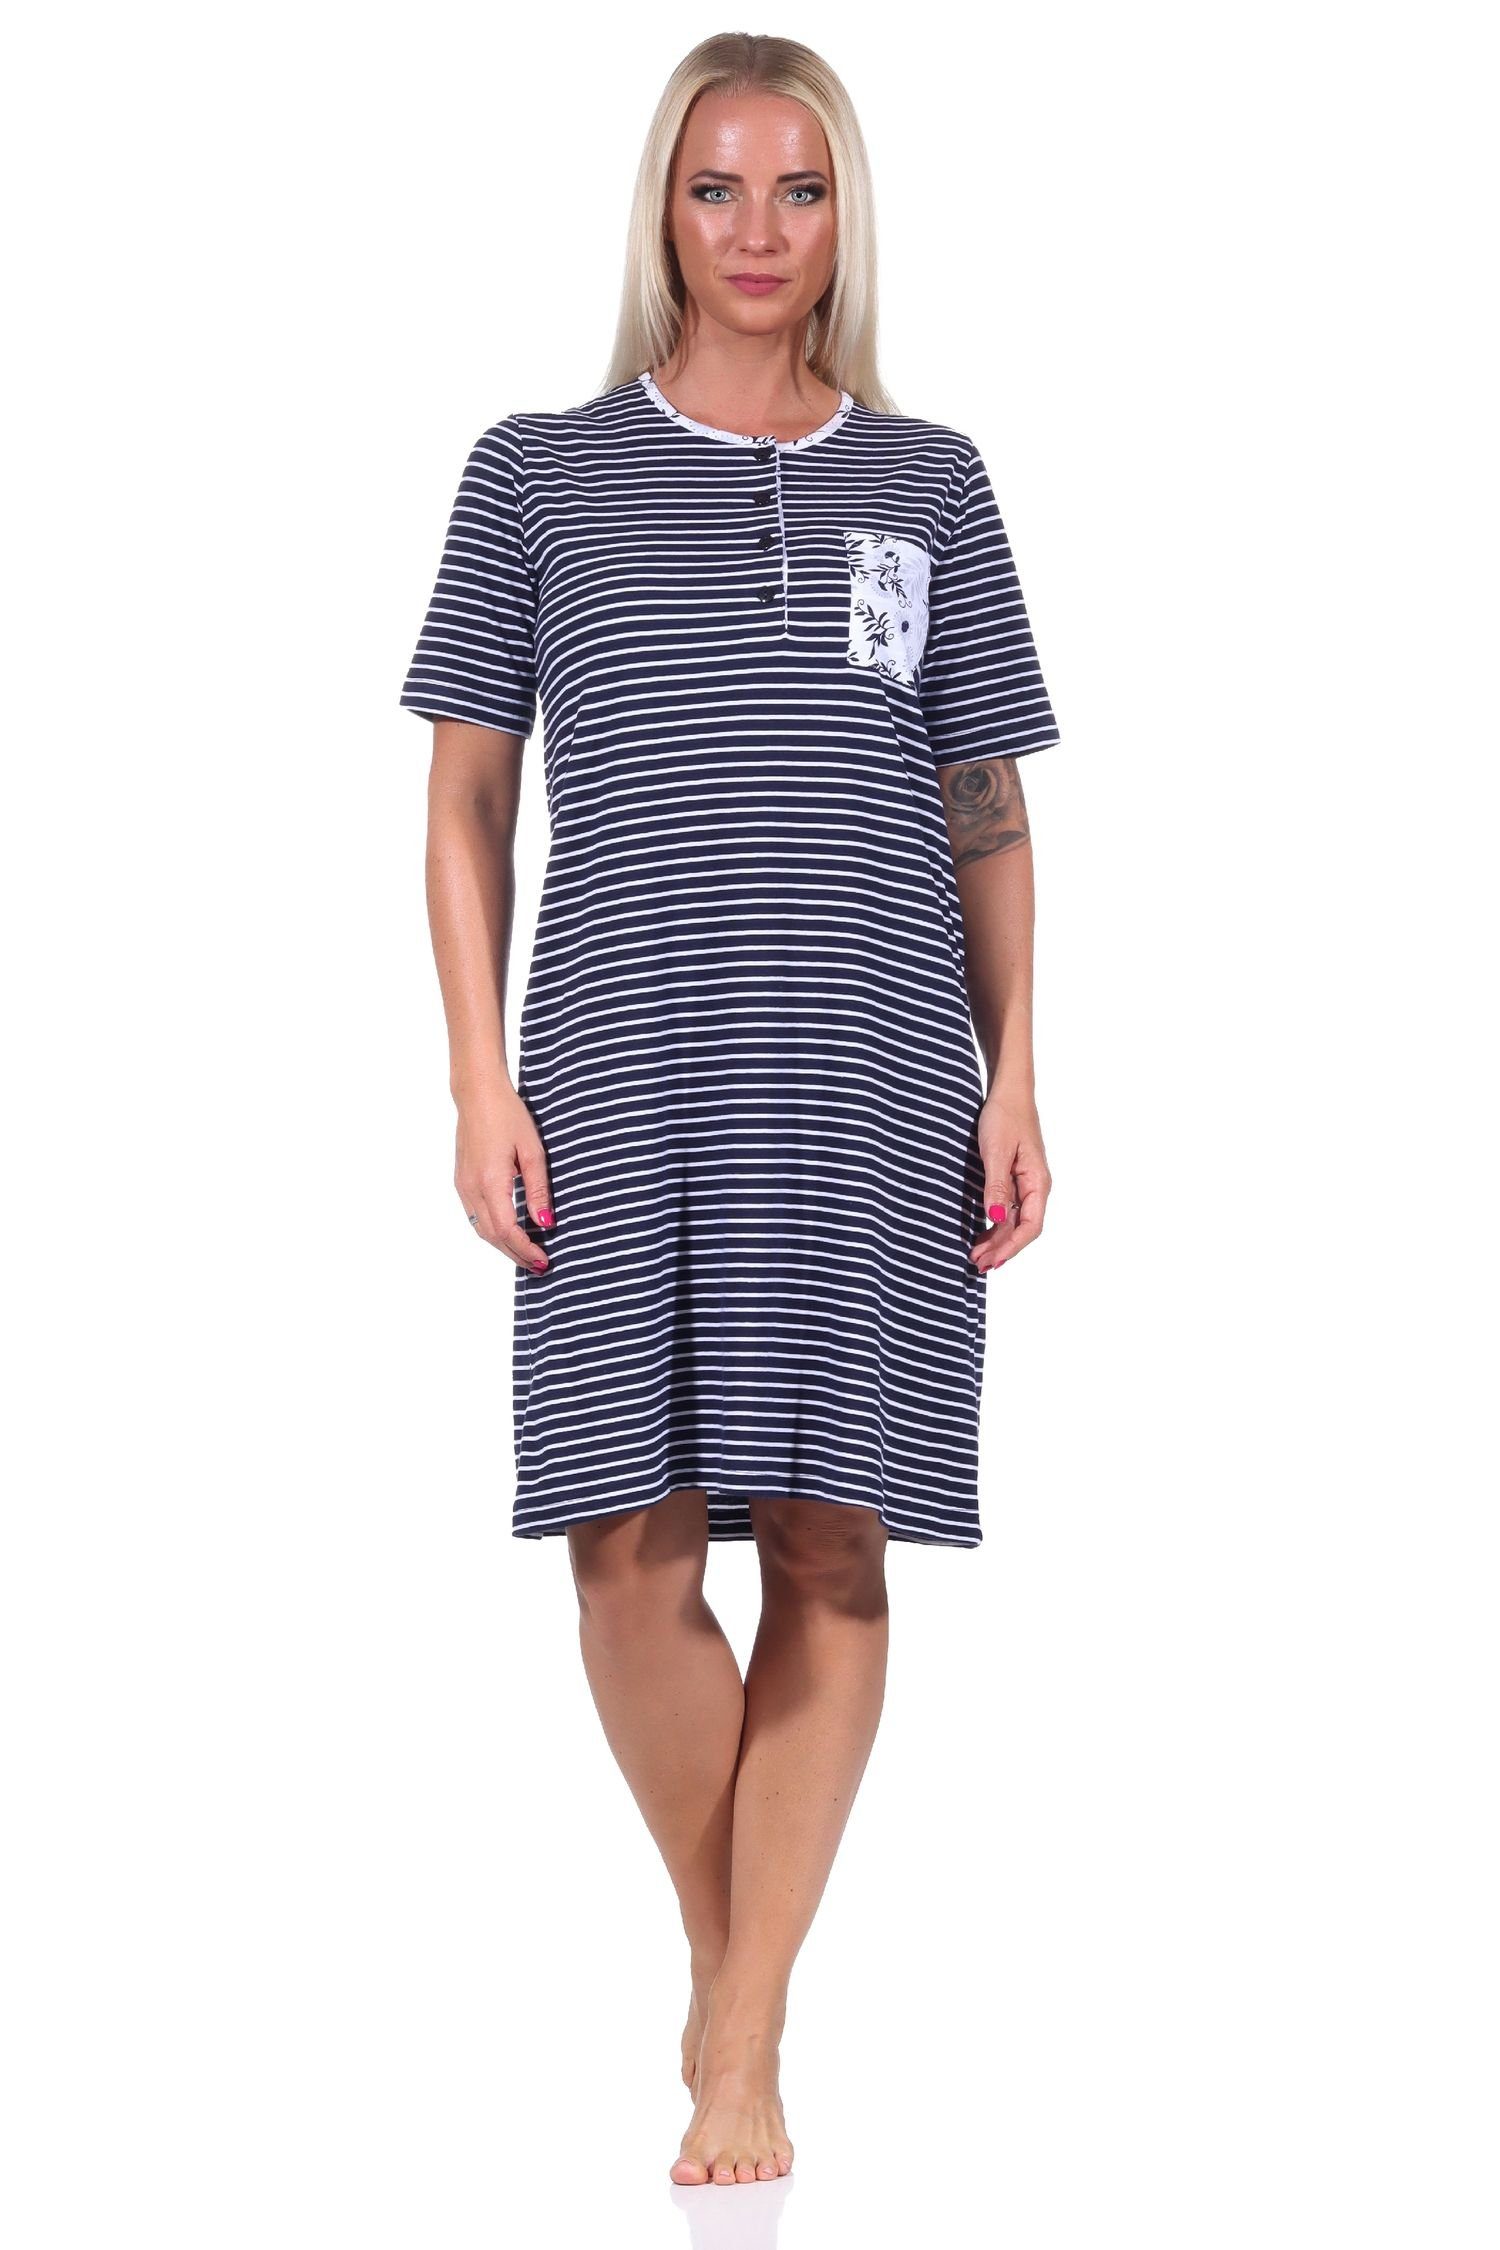 Normann Knopfleiste Nachthemd am in Hals mit Streifenoptik Damen marine Nachthemd kurzarm